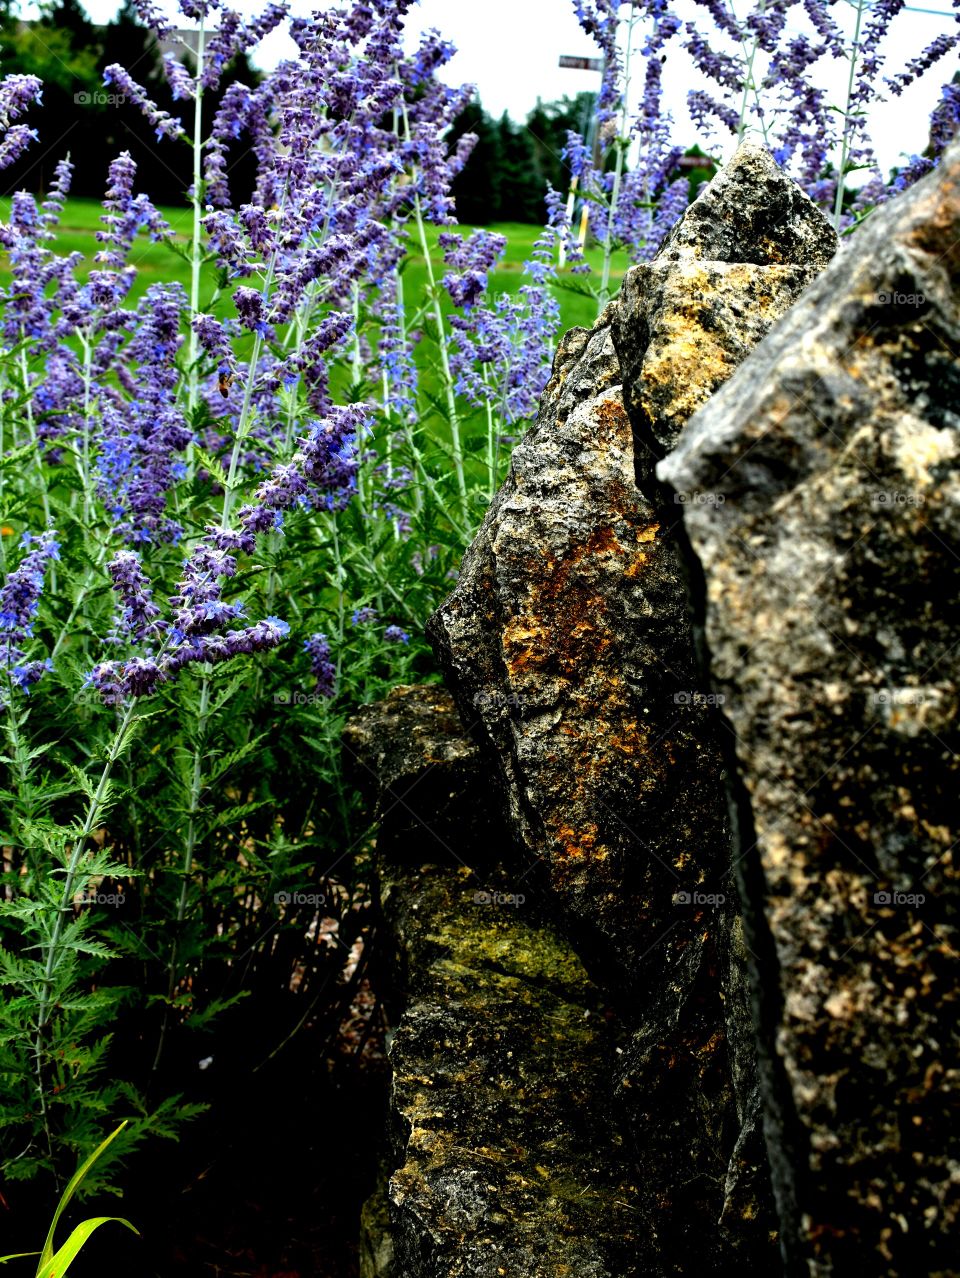 rocks flowers grass sky